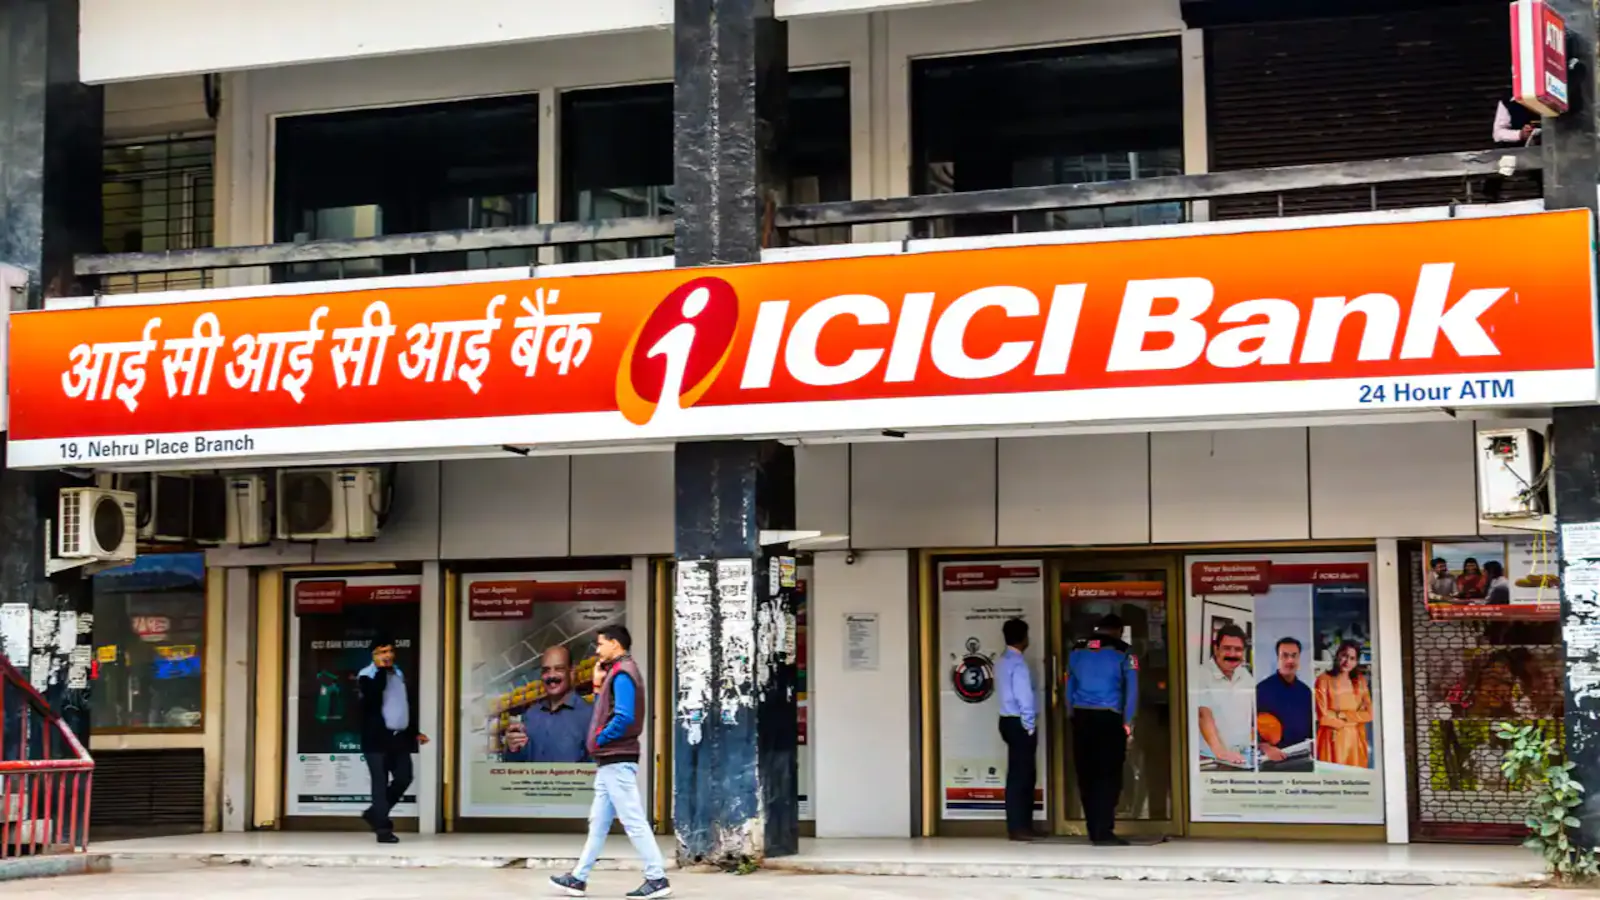 Share News: ब्लॉक डील में ICICI बैंक ने हिस्सा खरीदा, जानिए किसमें और कितनी